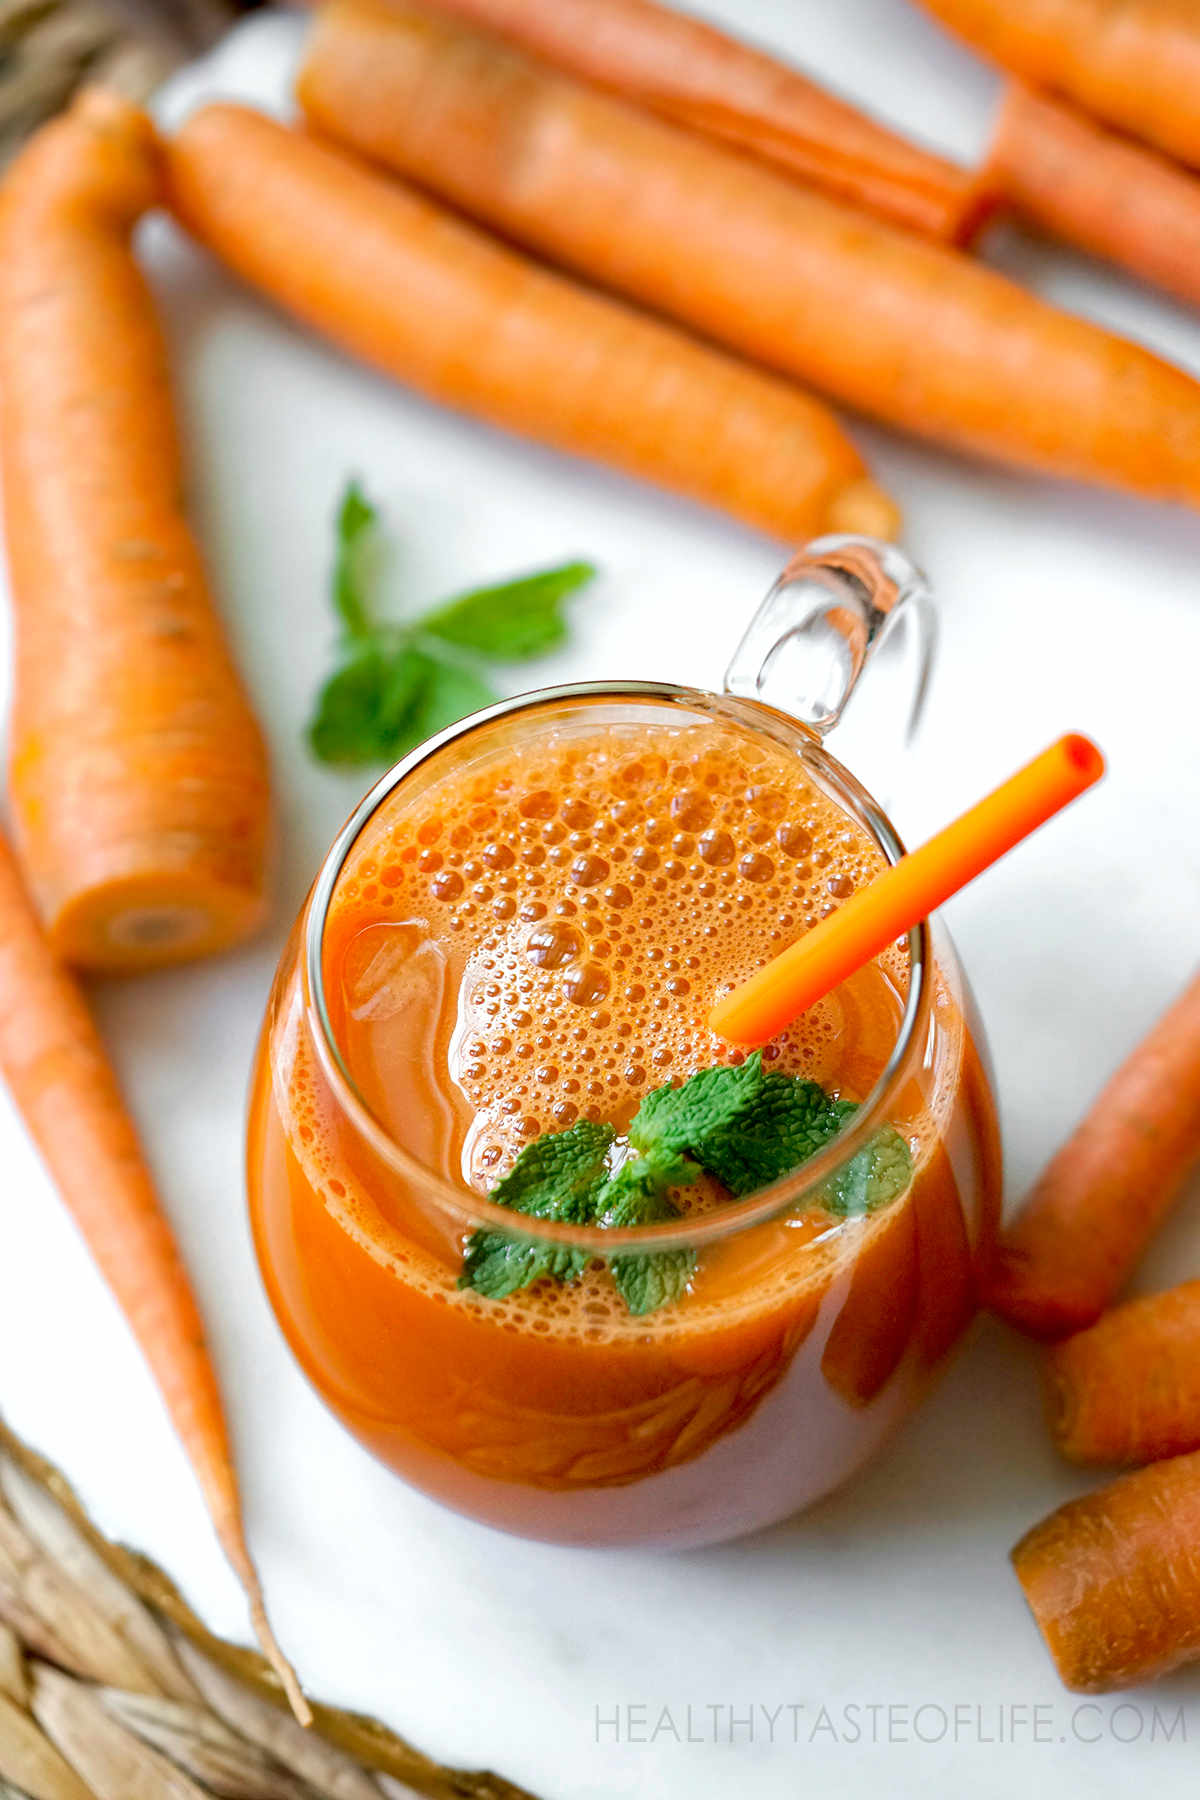 Carrot juice recipe and carrot juicing benefits.
